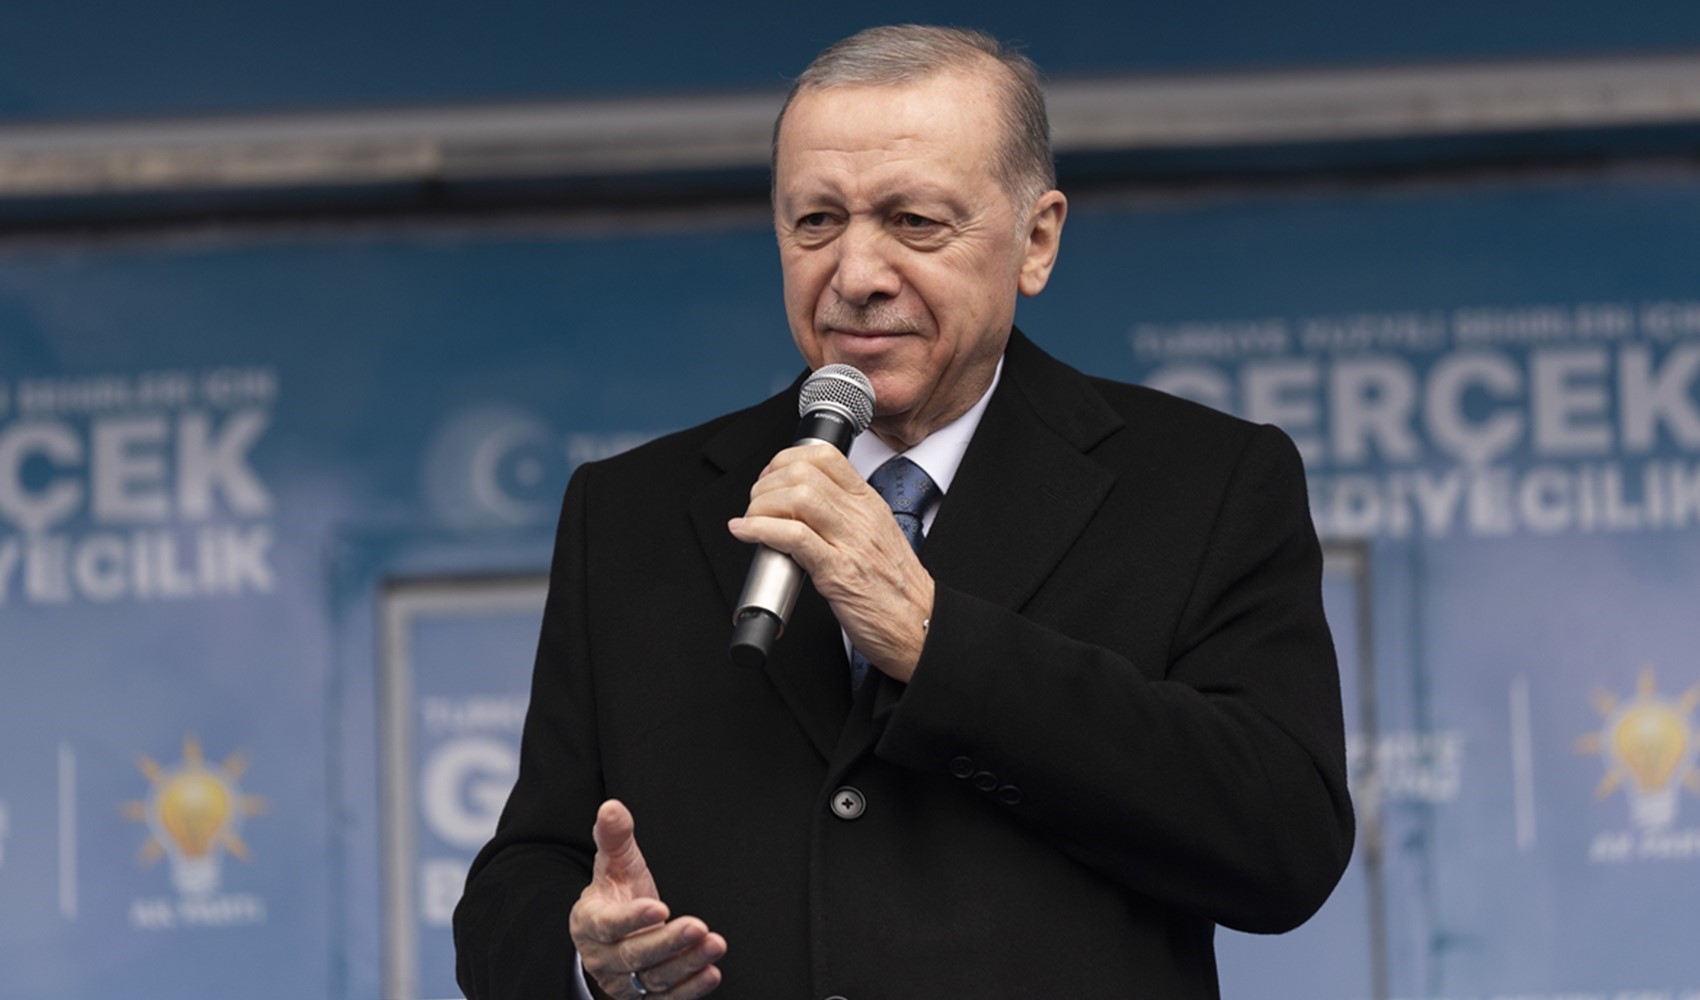 Erdoğan Ankara'da düzenlenen iftar programında askerlerle konuştu:  'Hain emelleri kursaklarda bırakmaktan başka çaremiz yoktur'